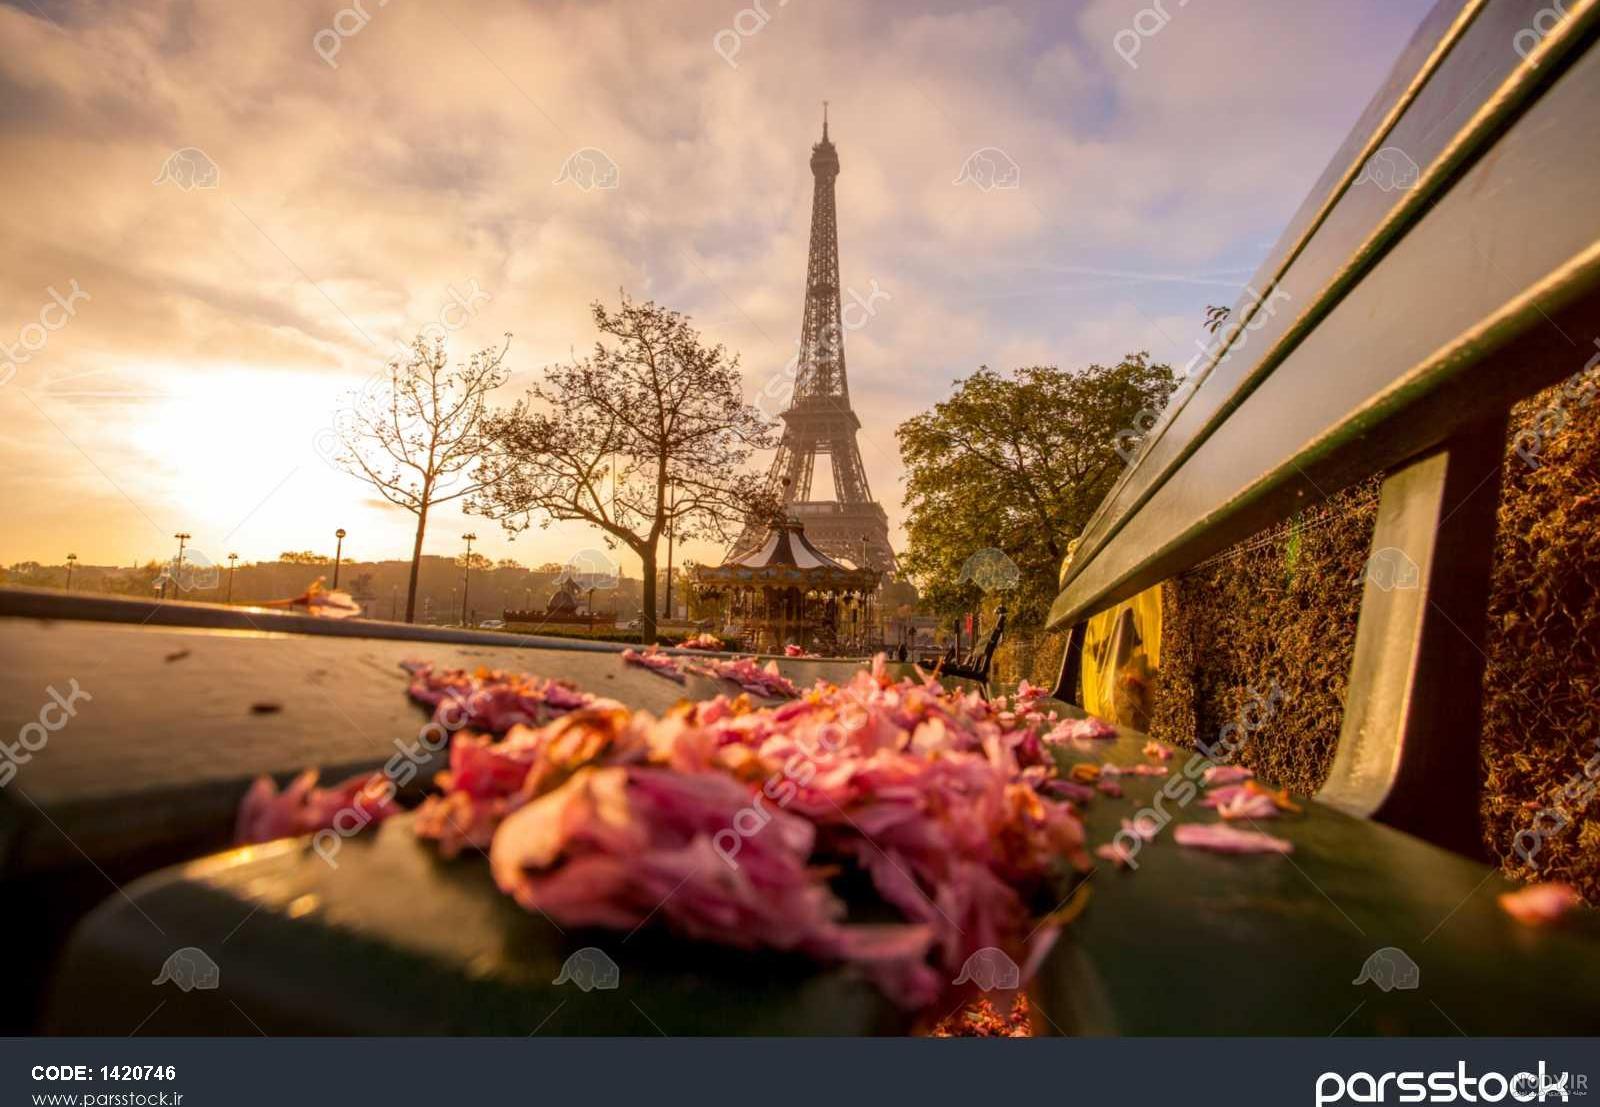 پاریس برج ایفل در یک روز روشن بهاری این تصویر رنگ آمیزی شده است ...